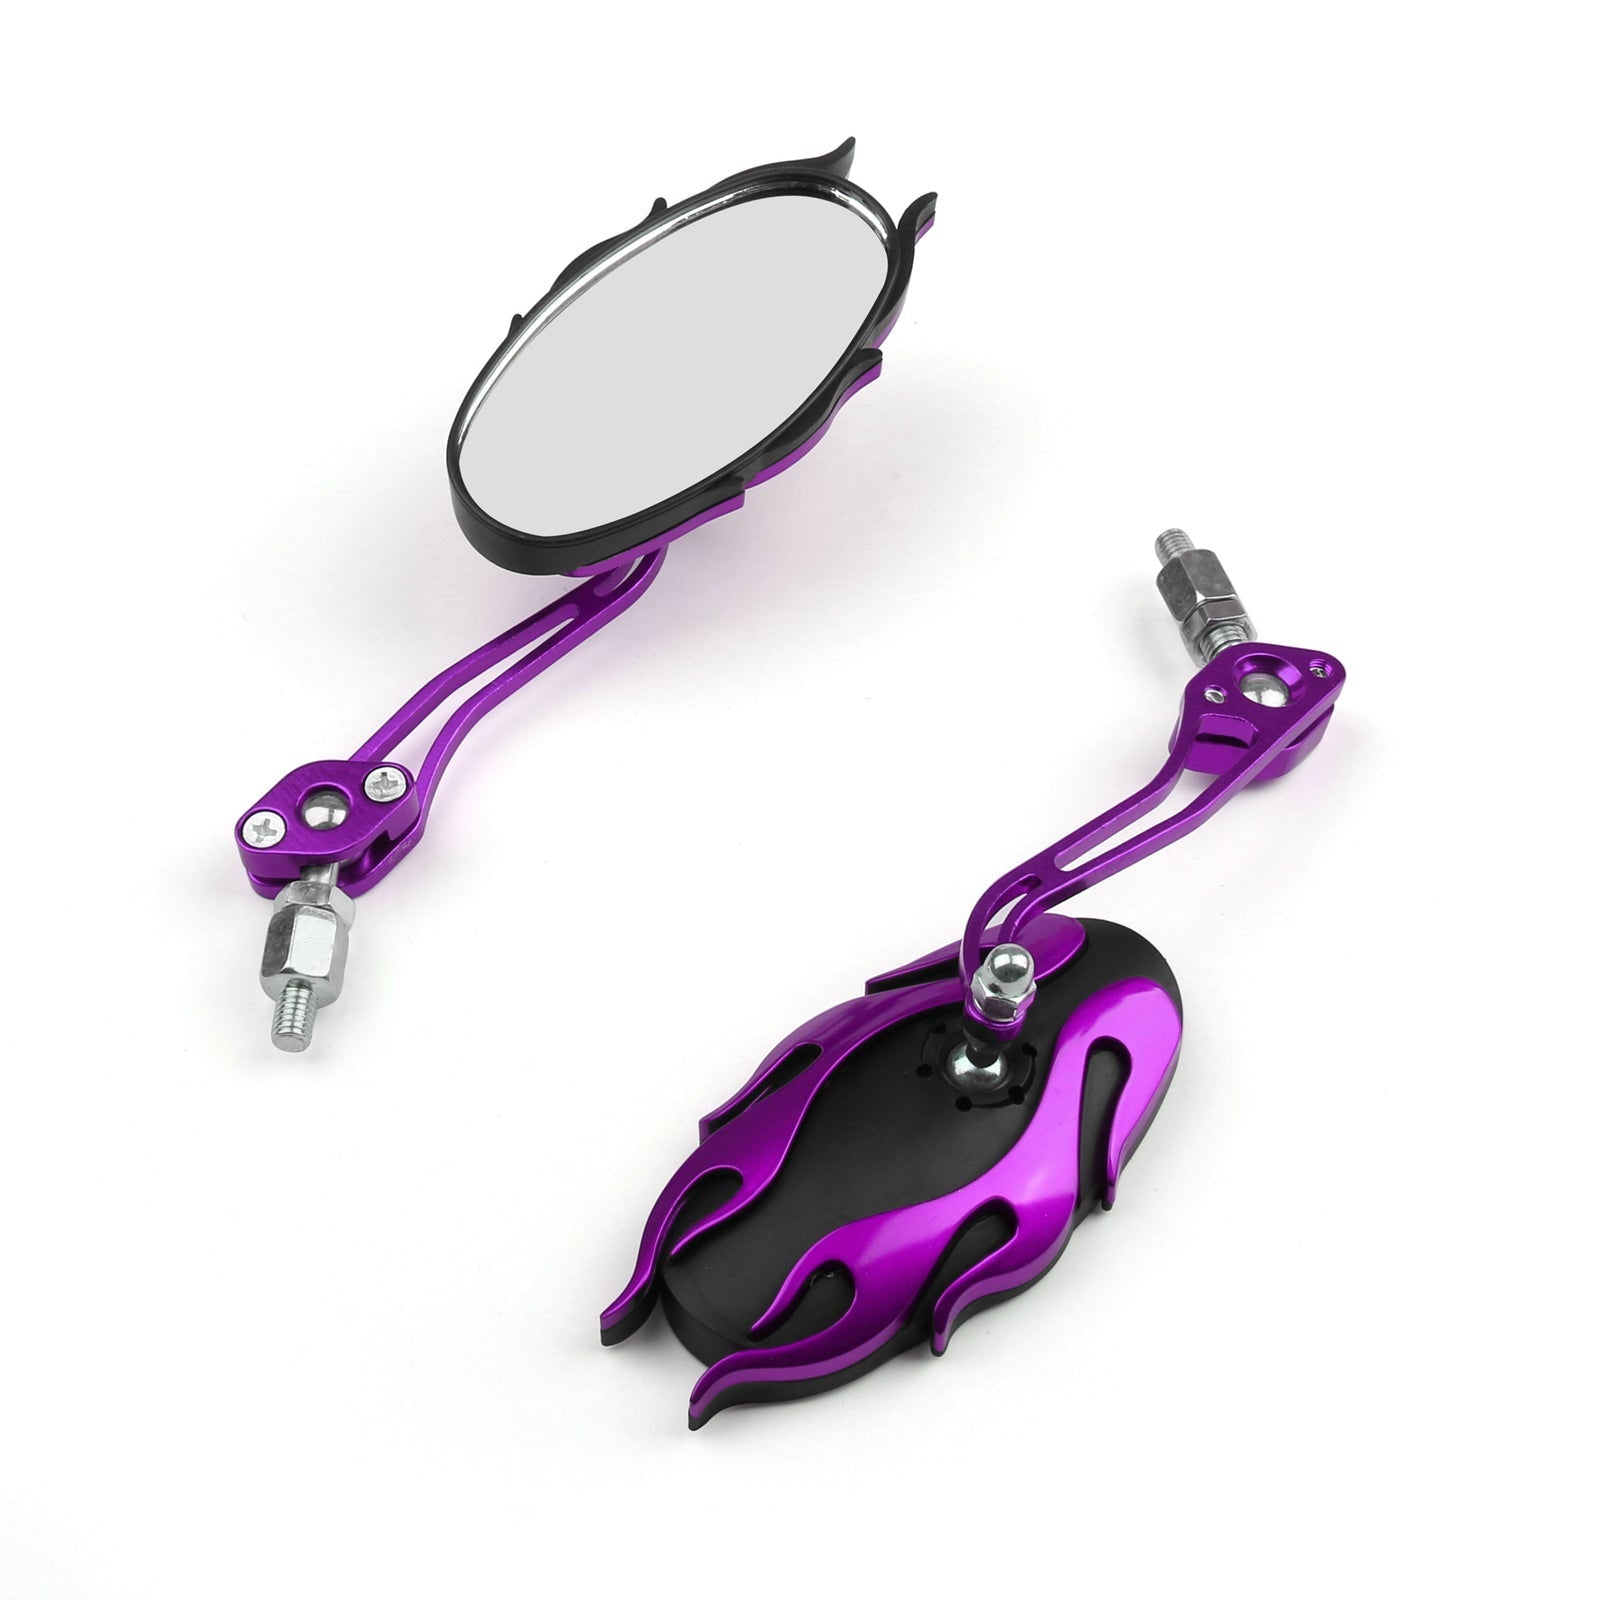 Espejos universales para motocicleta Espejo retrovisor genérico de 8 mm y 10 mm